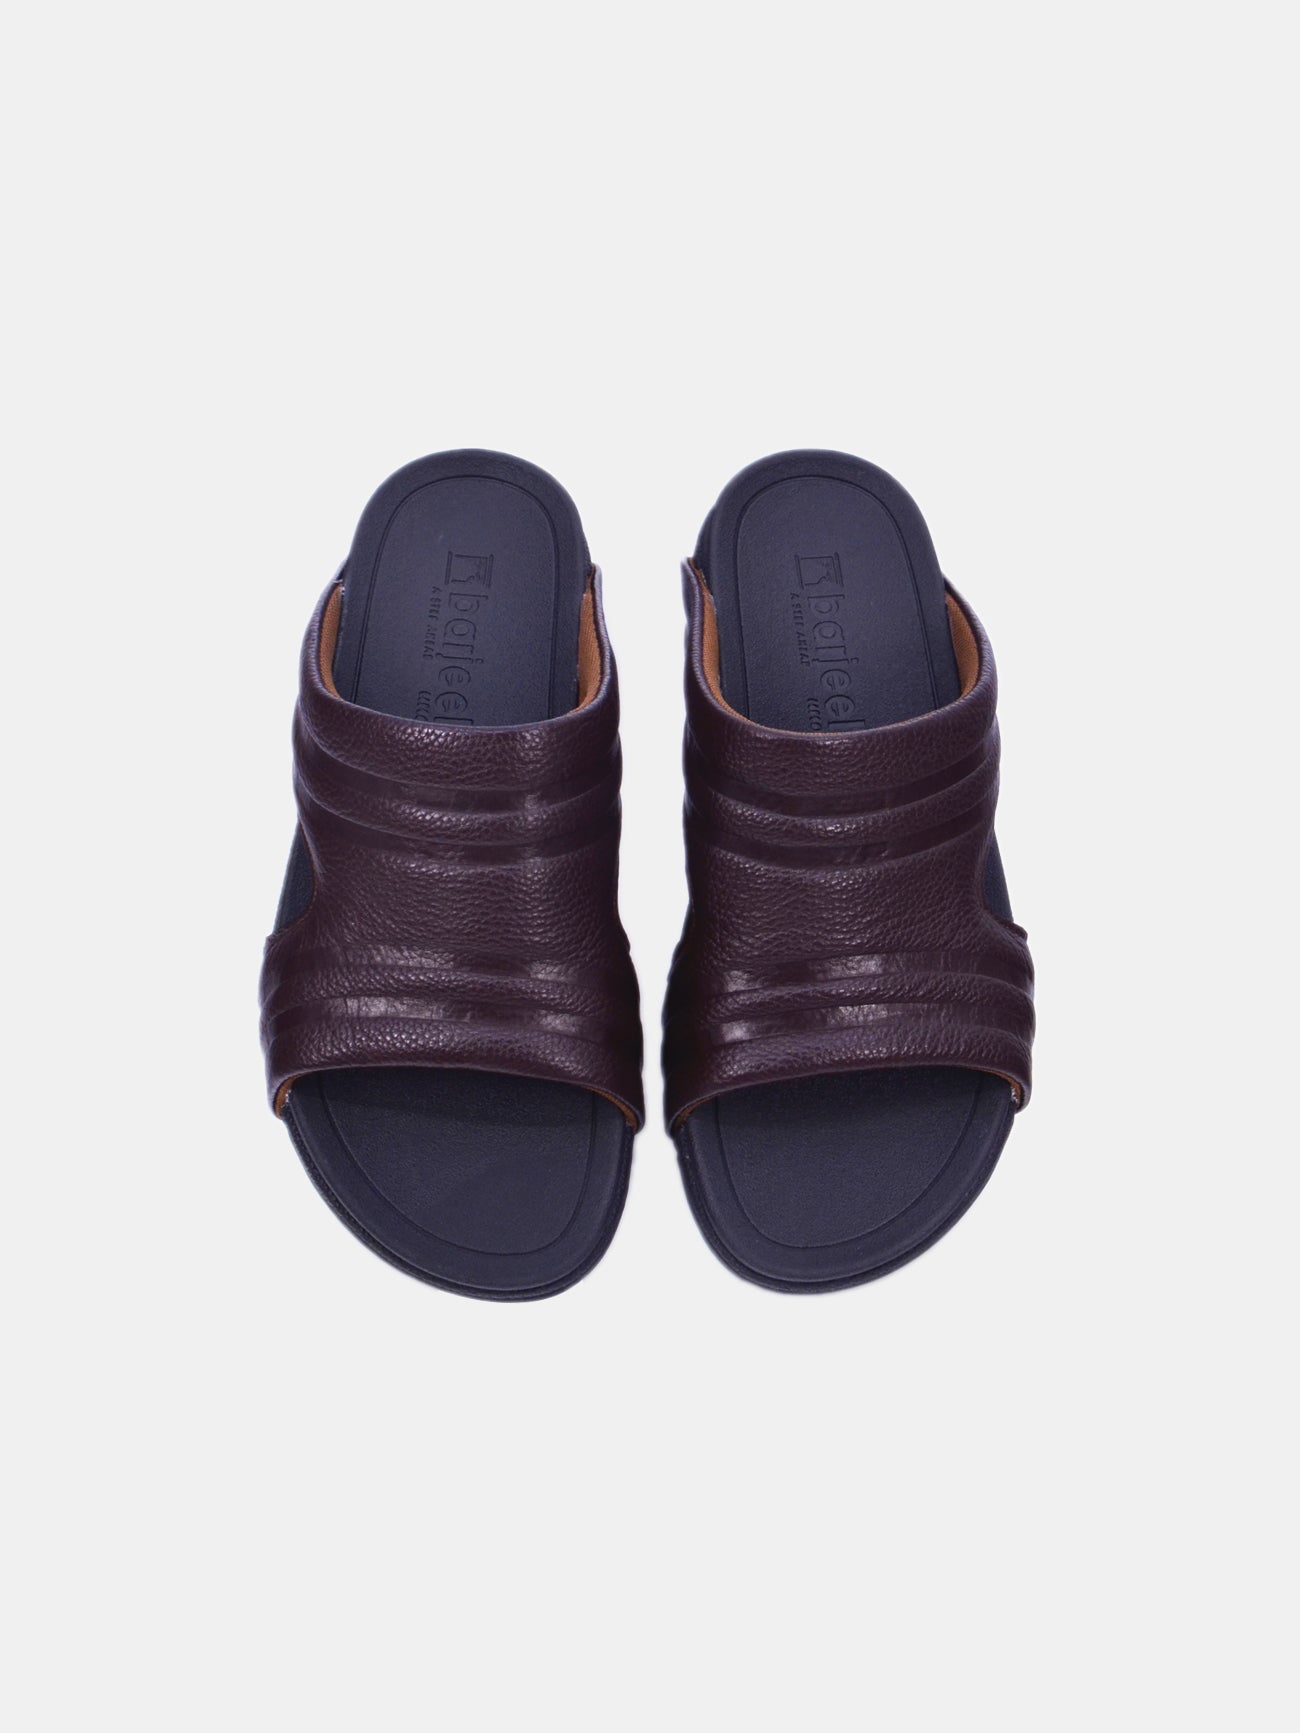 Barjeel Uno 20254 Men's Arabic Sandals #color_Brown